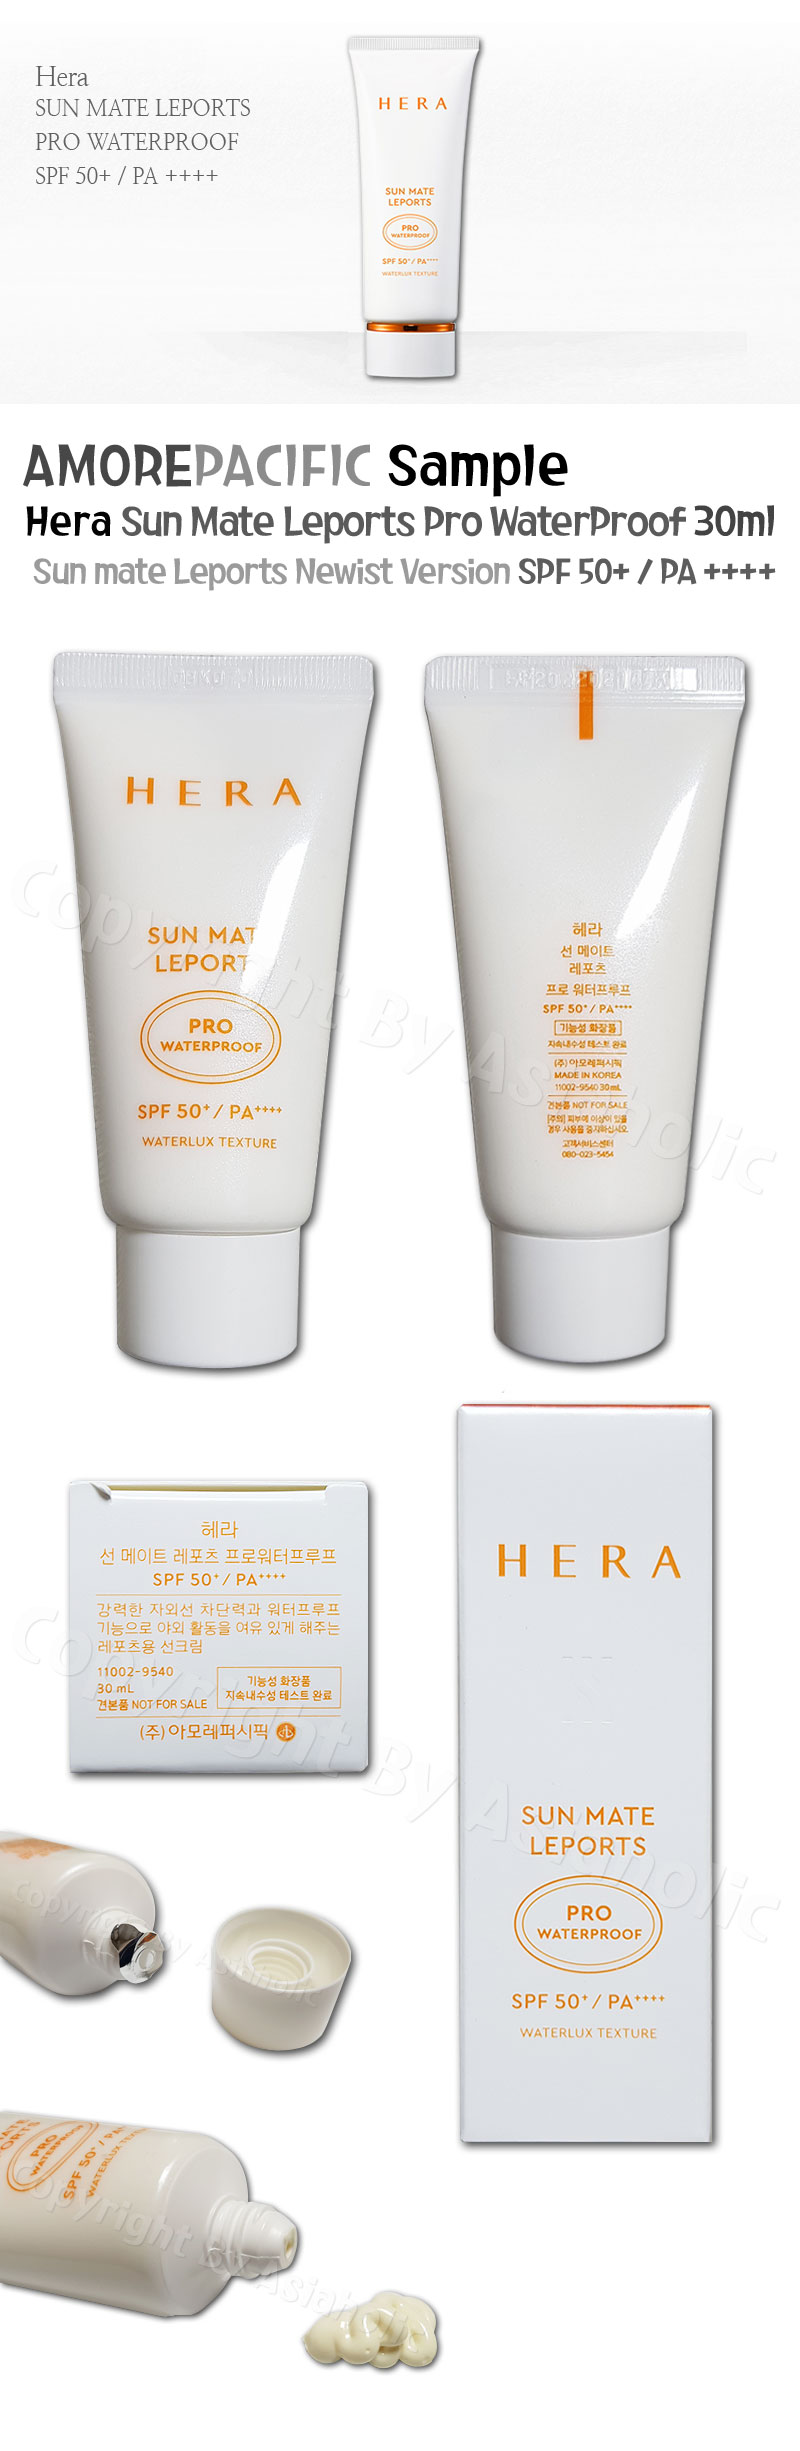 Hera Sun Mate Leports Pro Waterproof 30ml x 1pcs (30ml) SPF 50 Newist Version